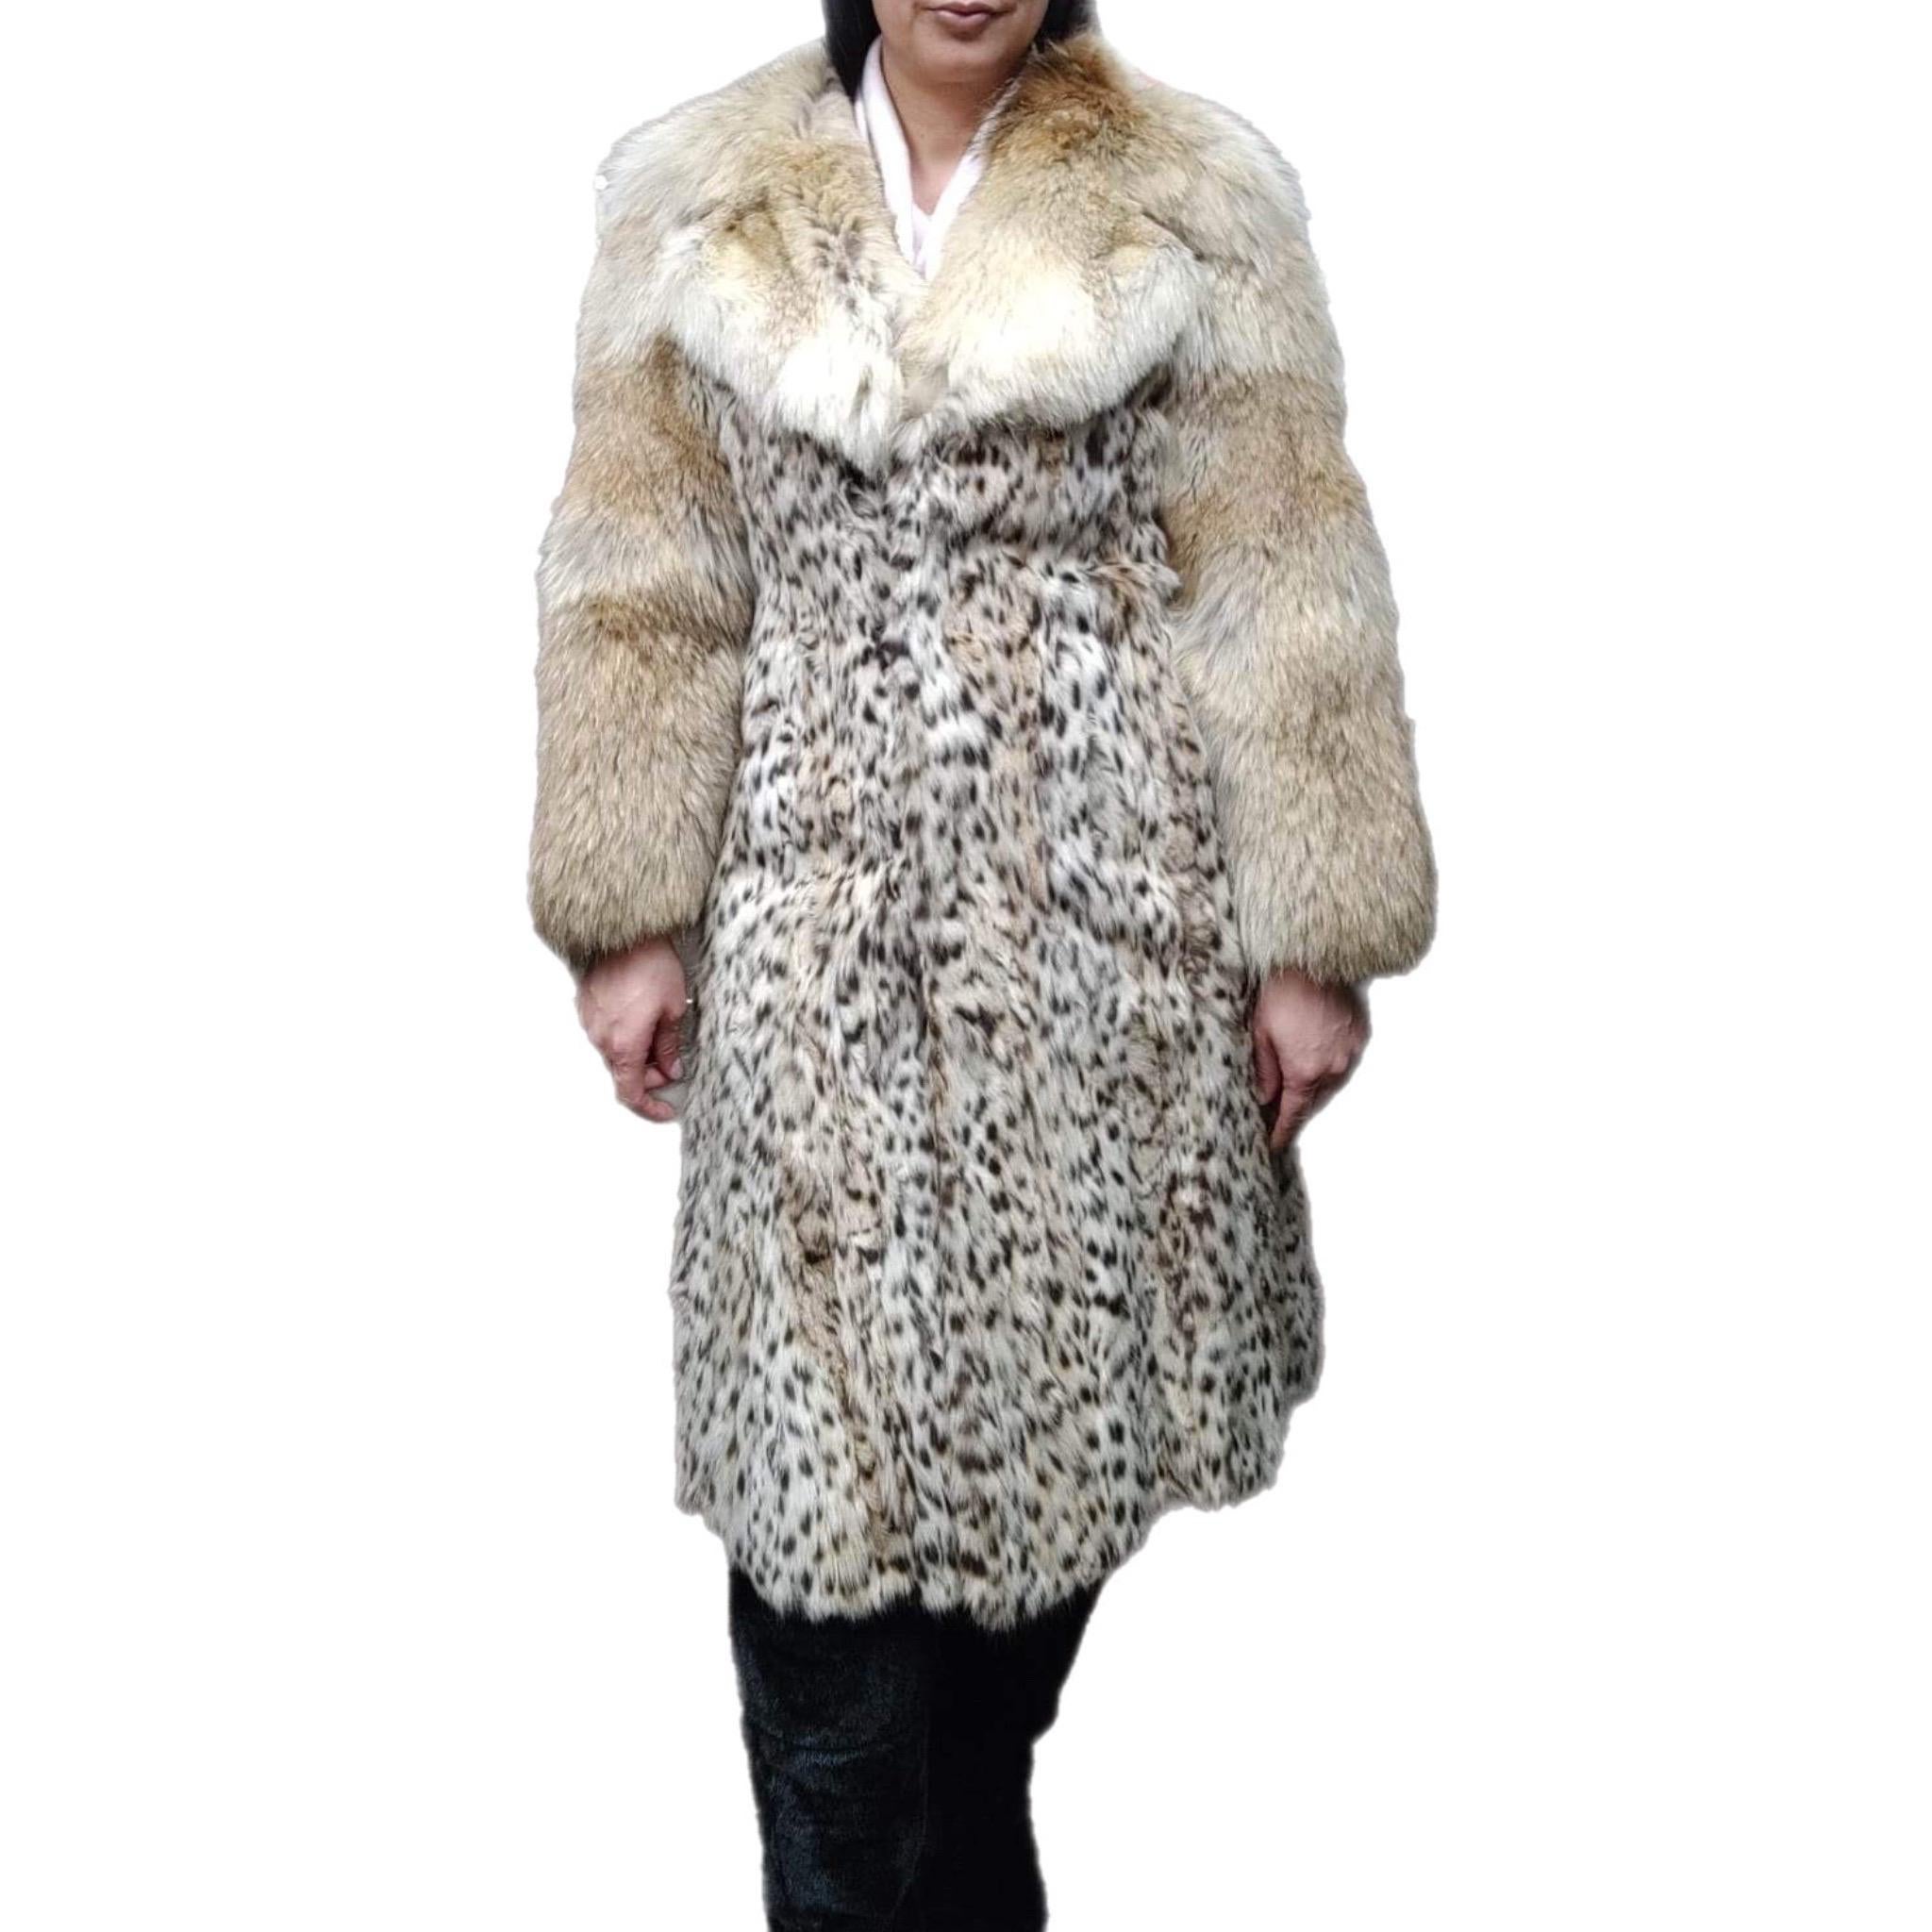 BESCHREIBUNG: Vintage White belly Lynx Pelzmantel ausgestattet Rock Kragen Kojote Pelz Ärmel 


Maßgeschneiderter Bootskragen, Prinzessinnen-Kojotenfell-Ärmel, geschmeidige Felle, schönes frisches Fell, europäische deutsche Schnallen zum